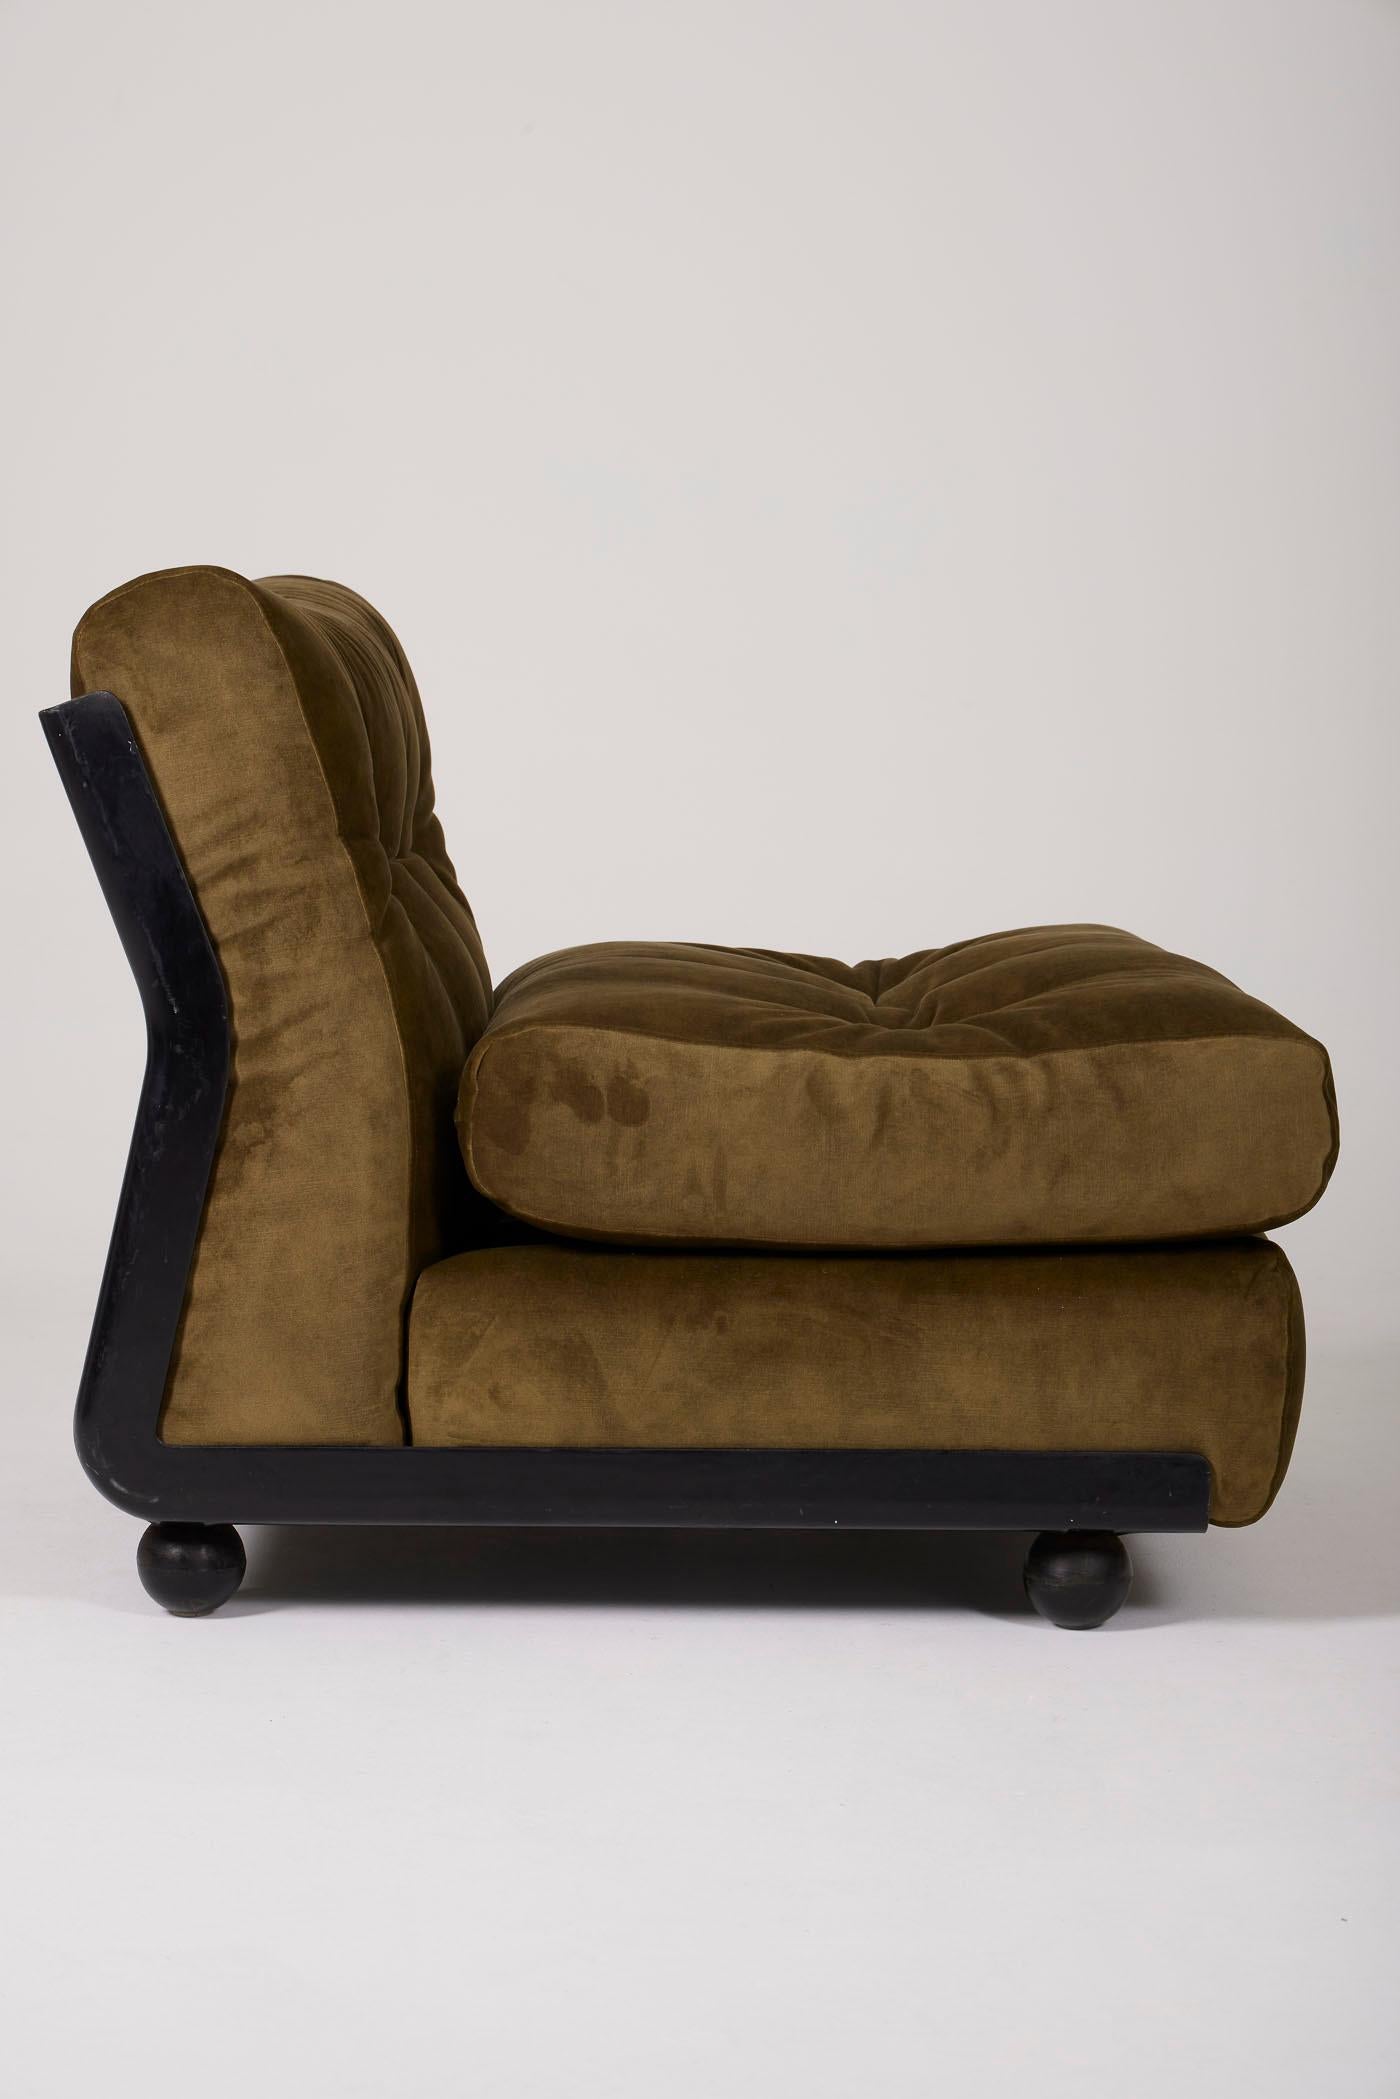 20th Century Mario Bellini armchair